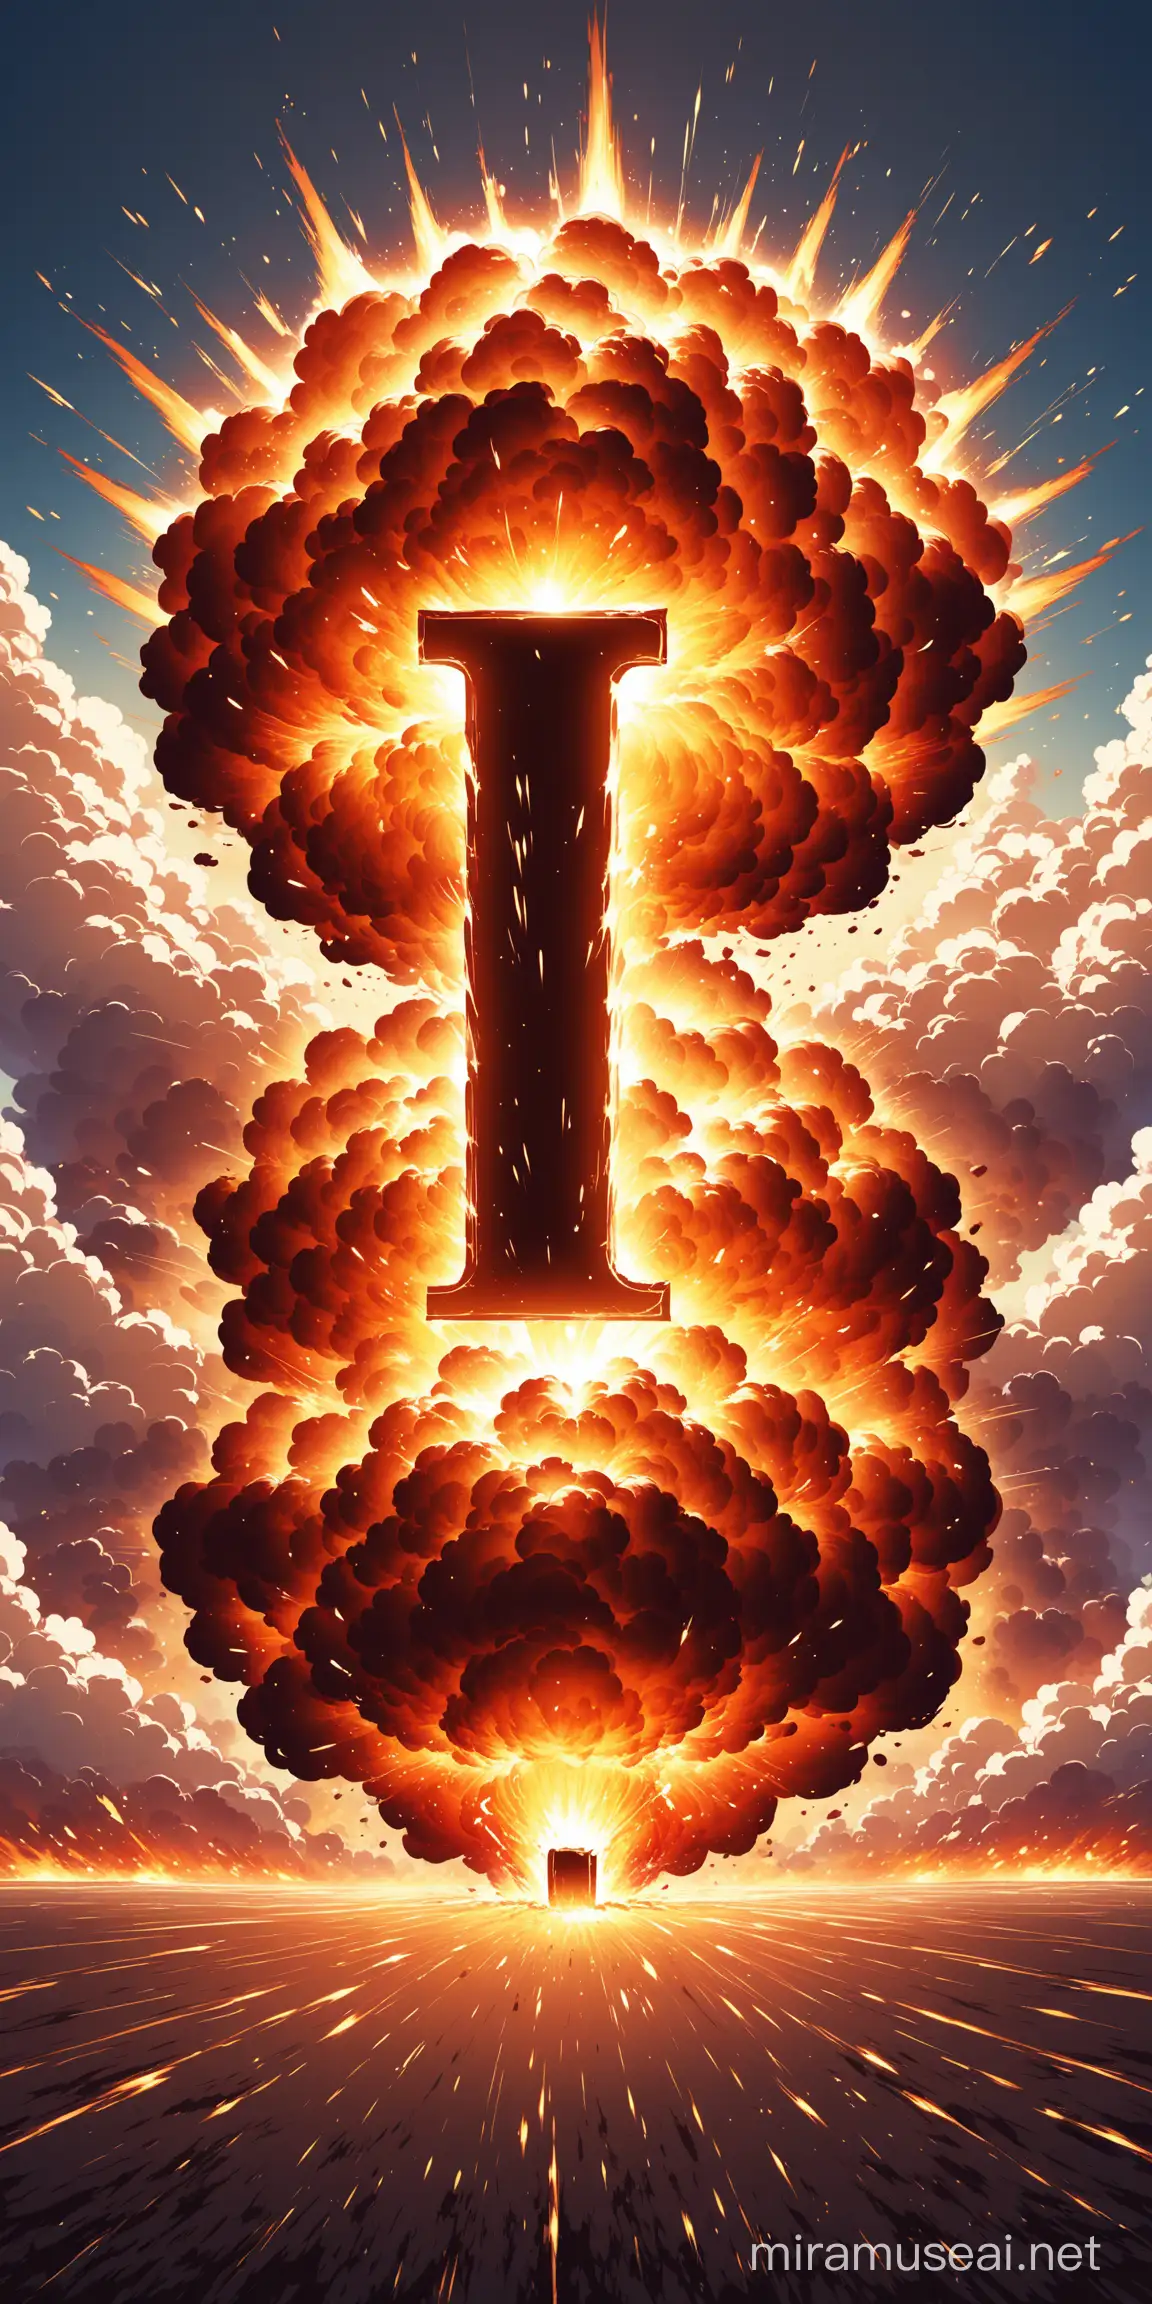 Explosão em formato de "I"